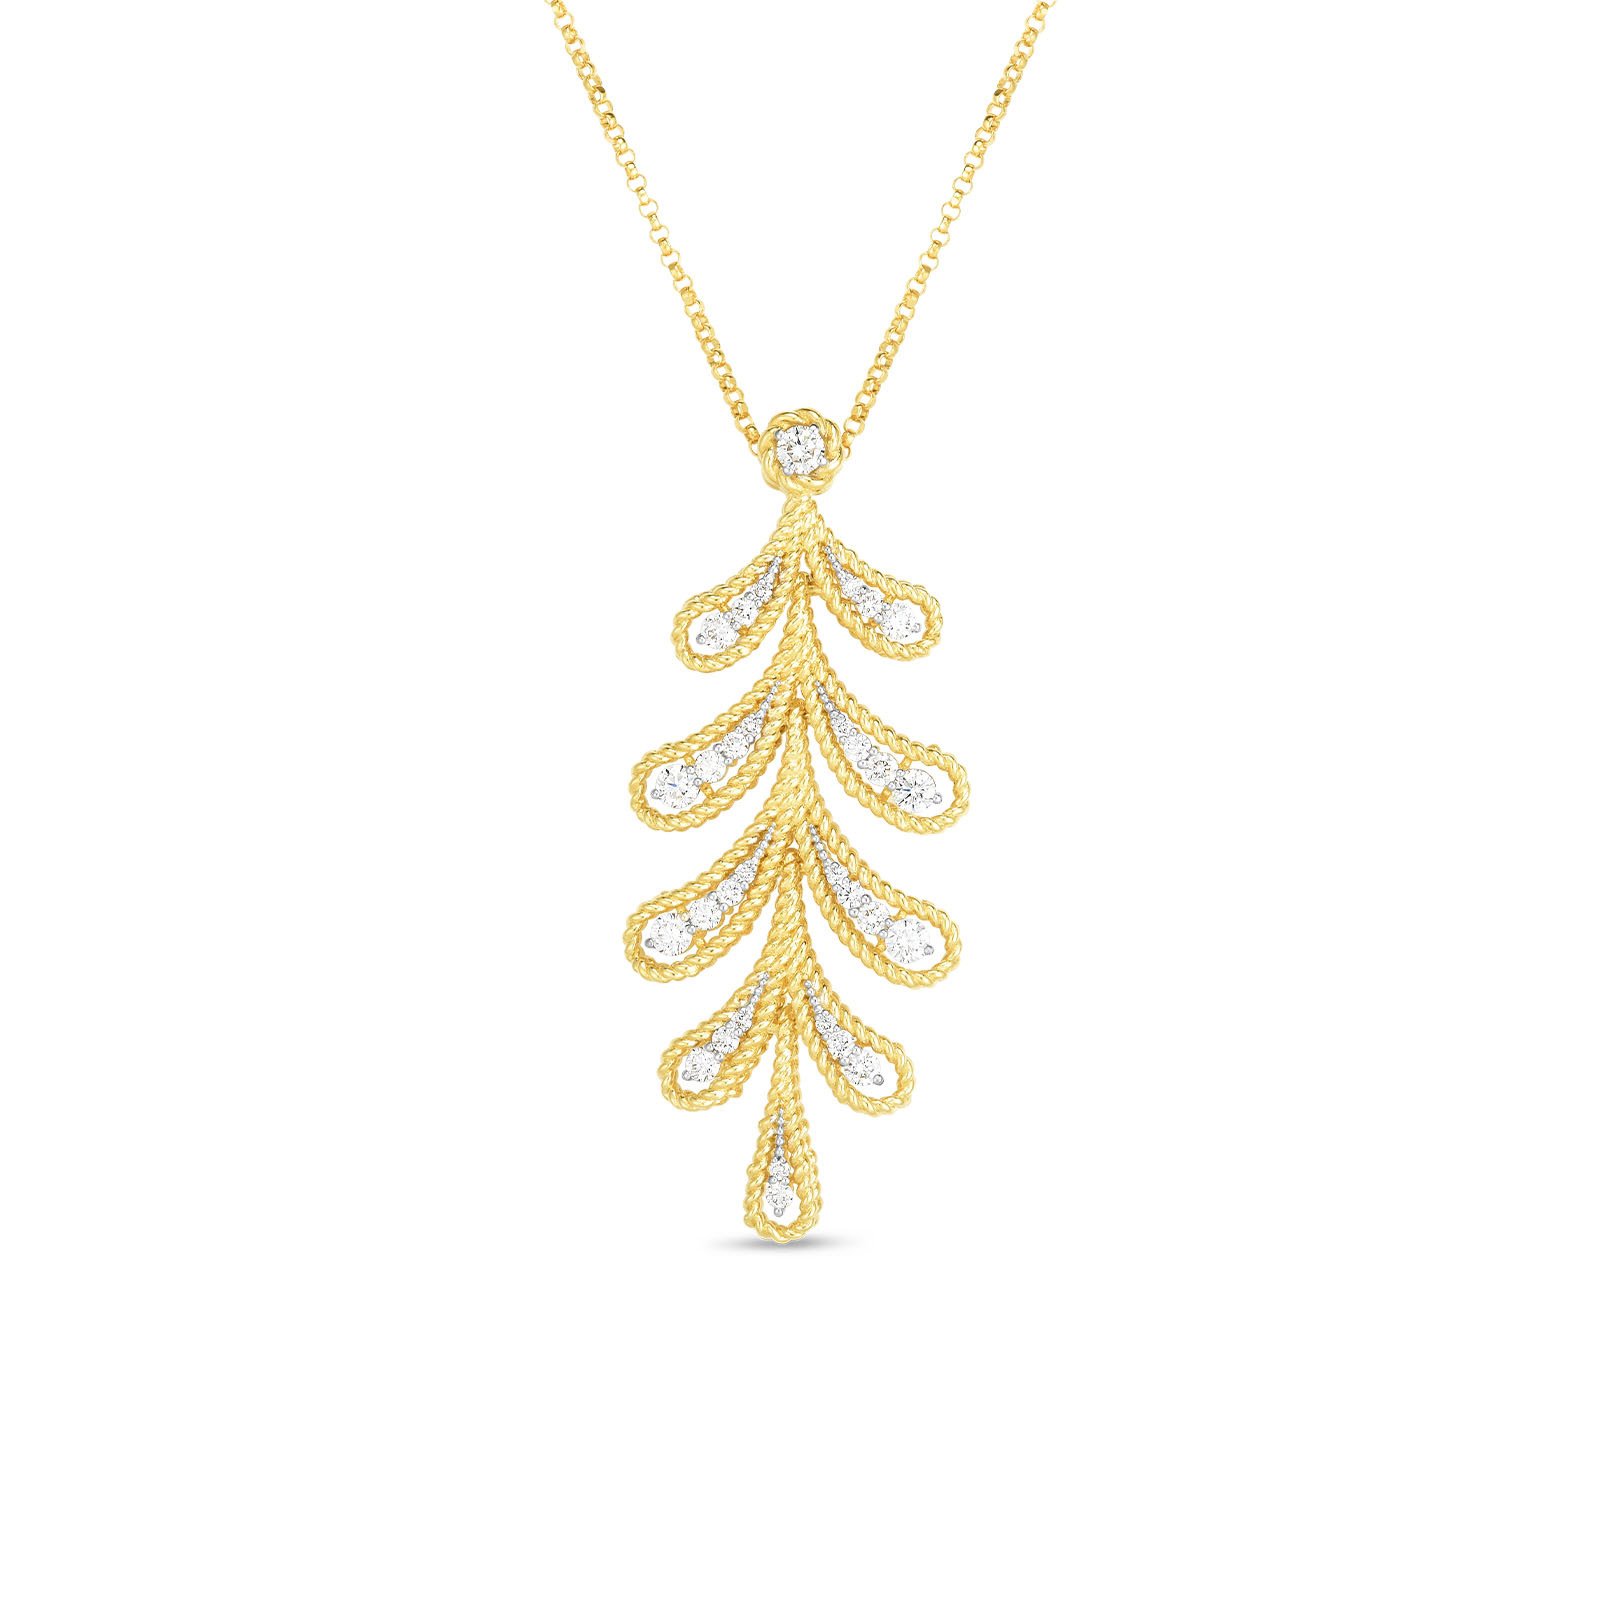 18K YG Byzantine Barocco Leaf Necklace with Diamonds